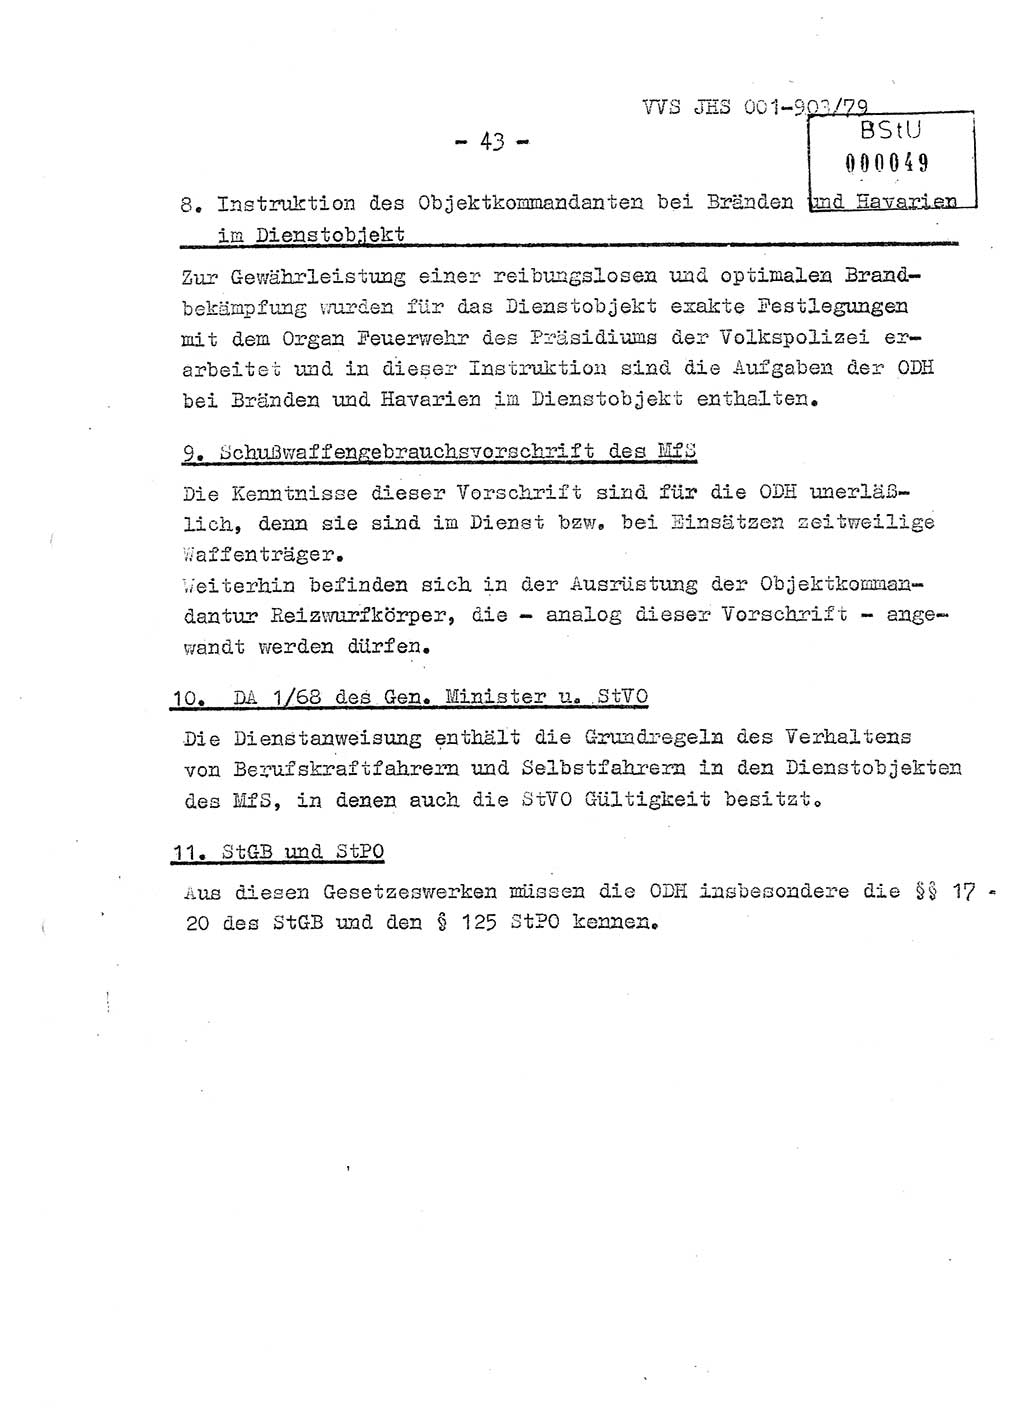 Fachschulabschlußarbeit Oberleutnant Jochen Pfeffer (HA Ⅸ/AGL), Ministerium für Staatssicherheit (MfS) [Deutsche Demokratische Republik (DDR)], Juristische Hochschule (JHS), Vertrauliche Verschlußsache (VVS) 001-903/79, Potsdam 1979, Seite 43 (FS-Abschl.-Arb. MfS DDR JHS VVS 001-903/79 1979, S. 43)